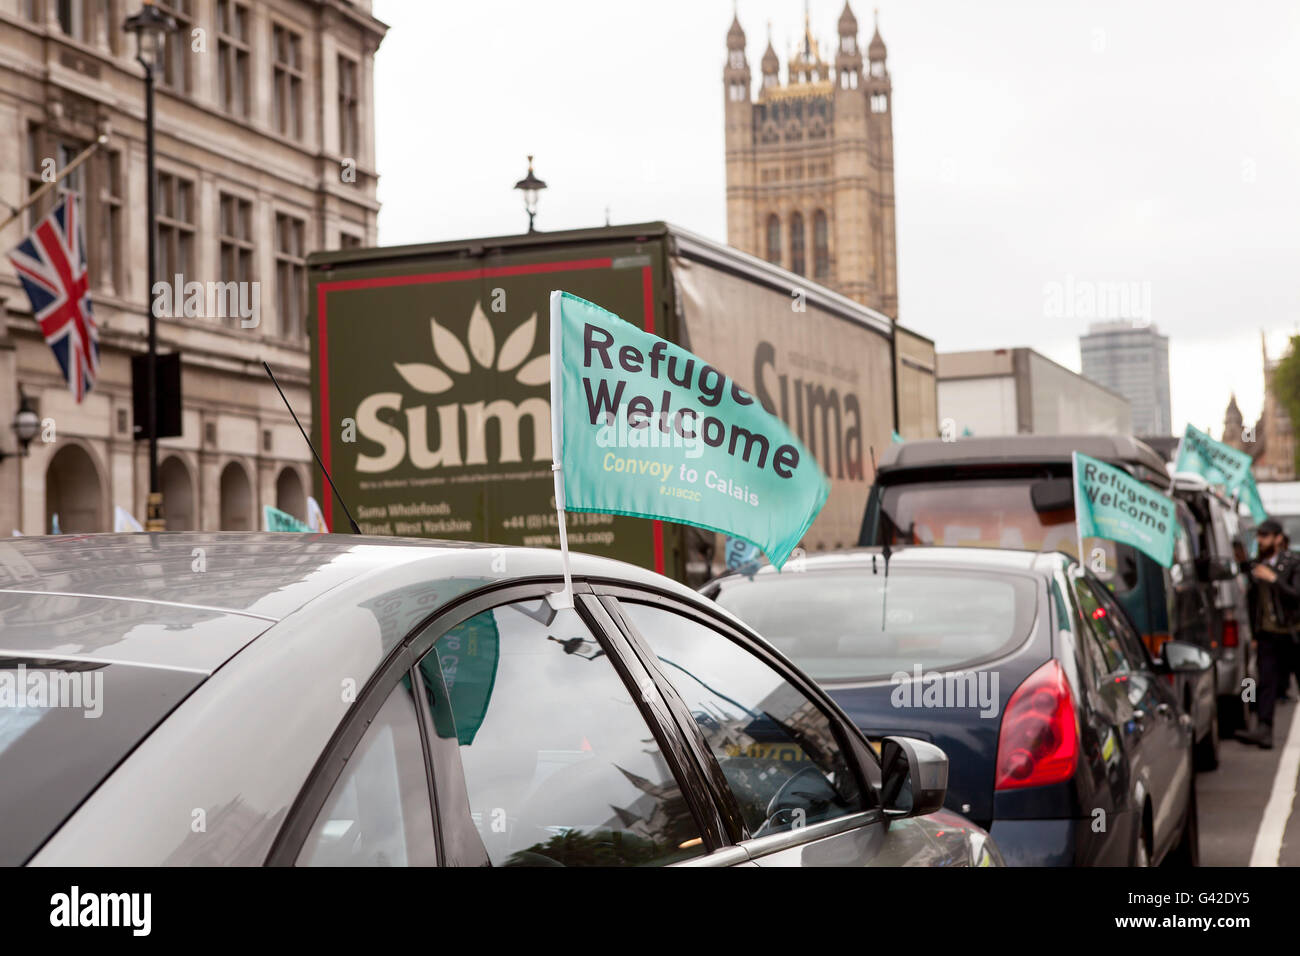 Londra, Regno Unito. Il 18 giugno, 2016. I rifugiati benvenuto. Una flotta di veicoli si sono incontrati a Whitehall questa mattina per iniziare un convoglio diretto a Calais, in particolare la giungla, a fornire aiuti ai profughi. Credito: Jane Campbell/Alamy Live News Foto Stock